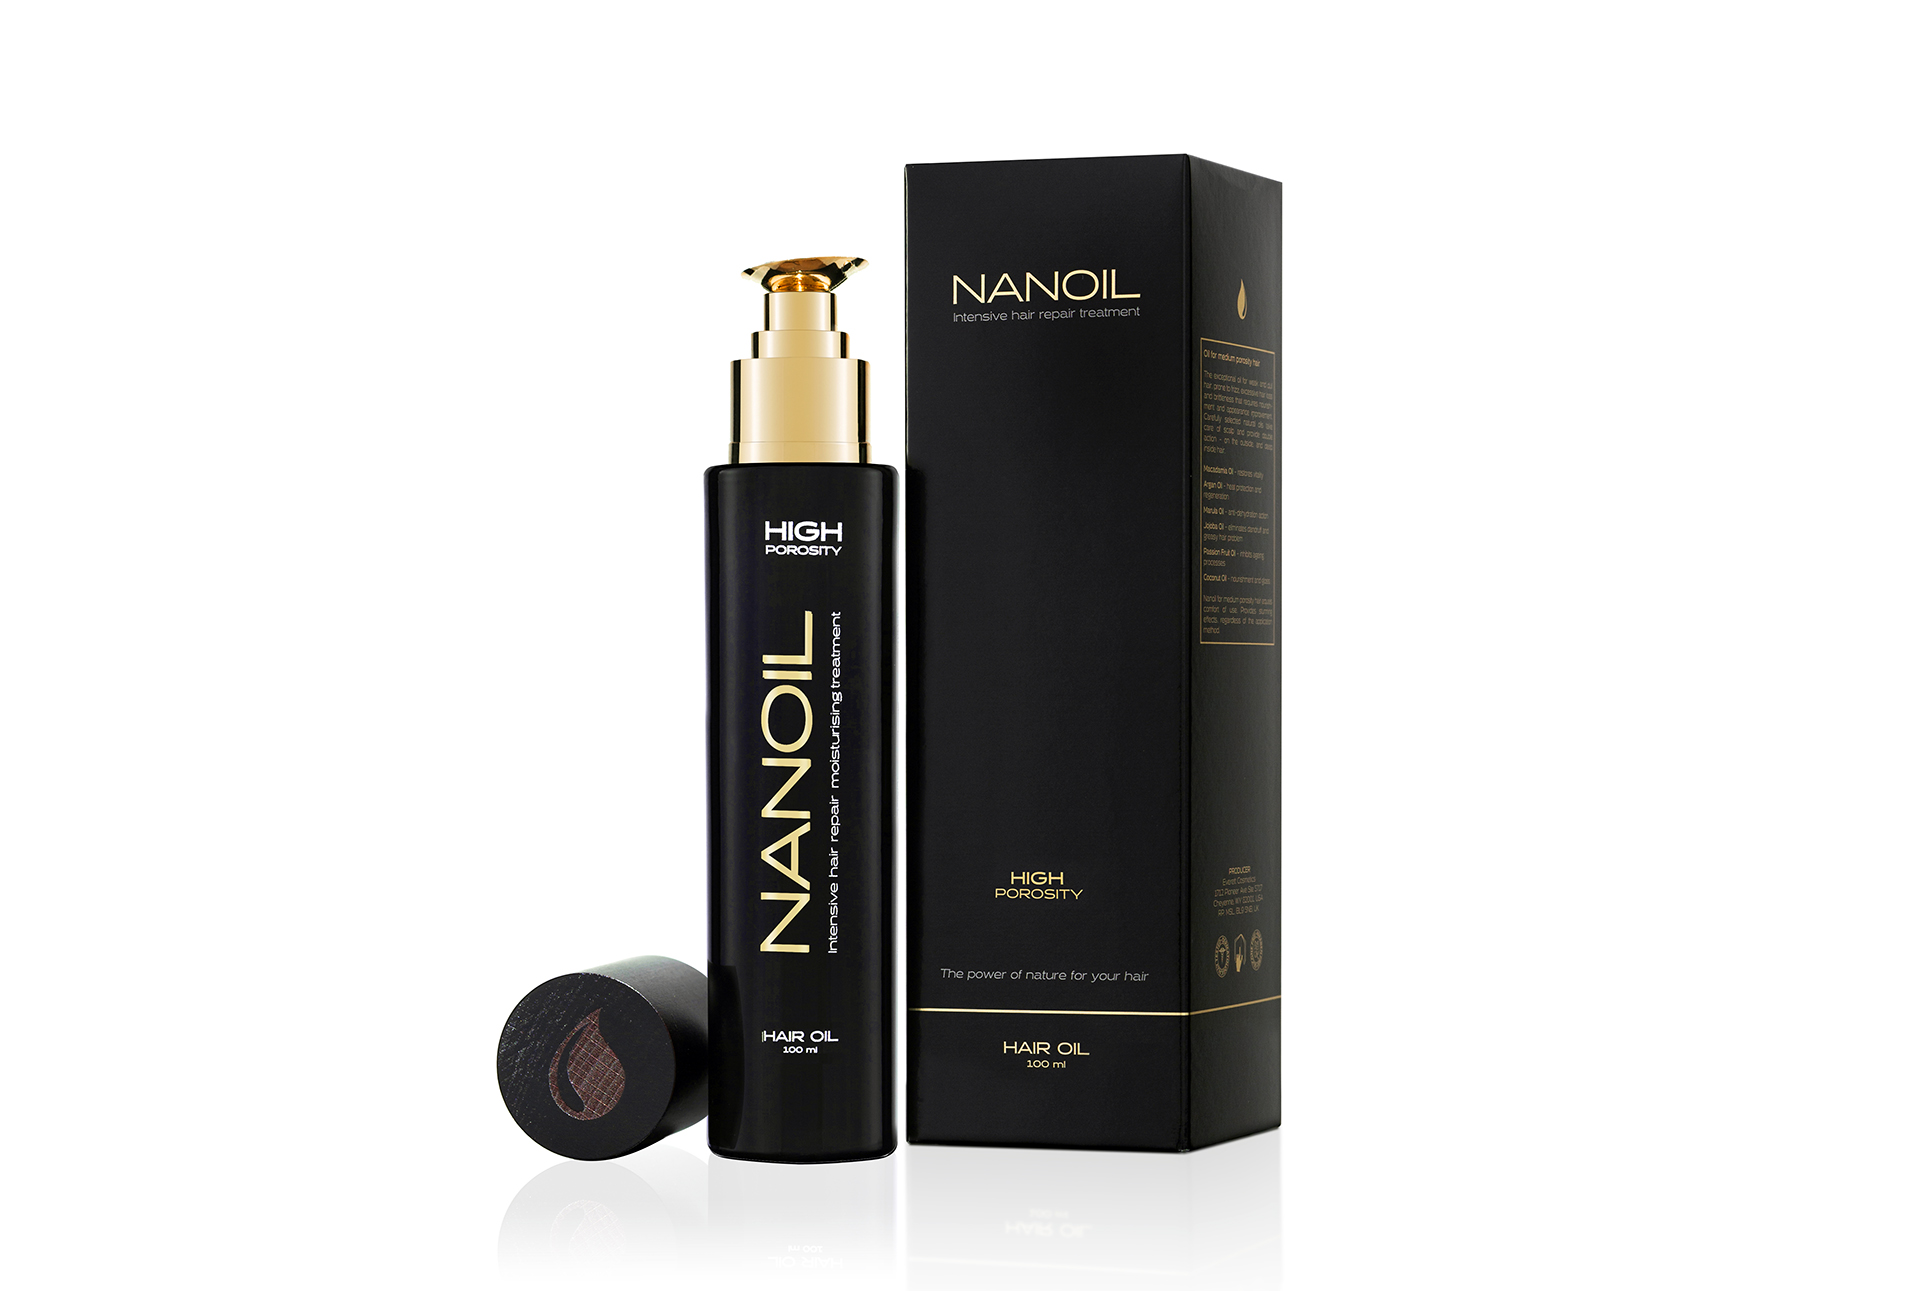 Nanoil Hair Oil – Targets each hair porosity type